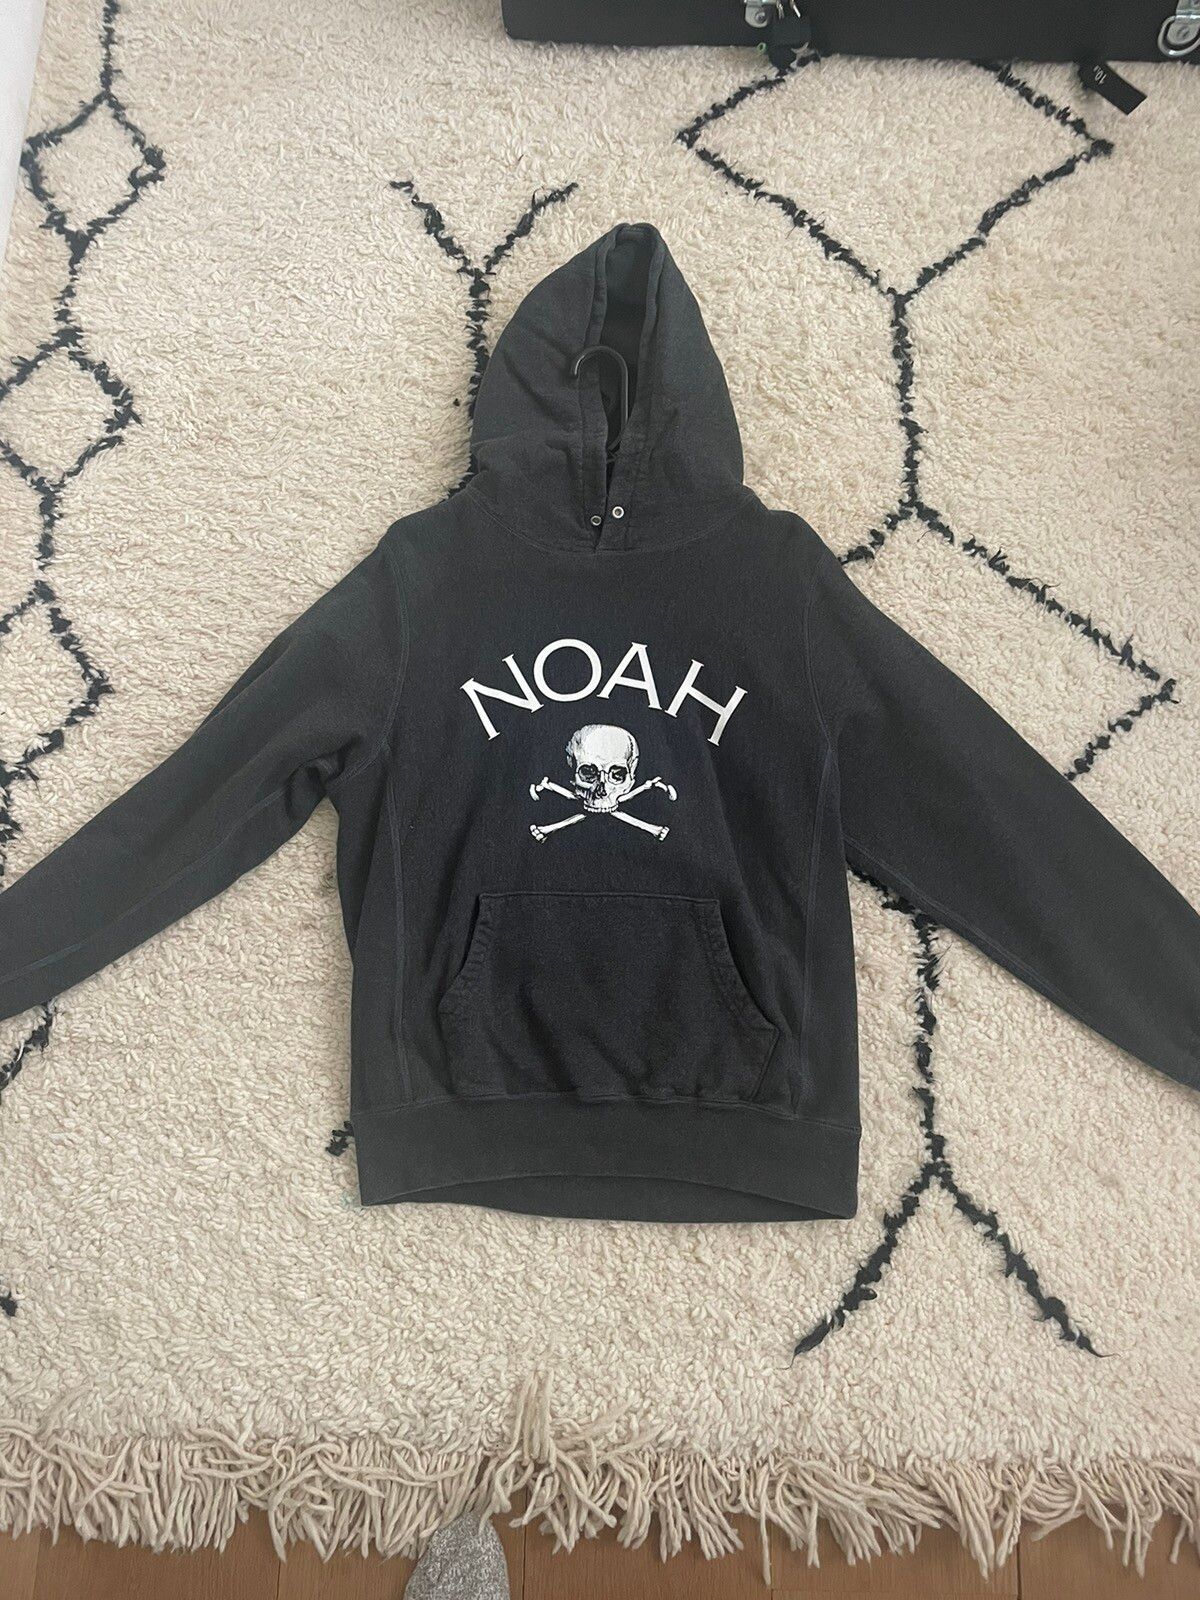 Noah Noah Jolly Roger Hoodie | Grailed